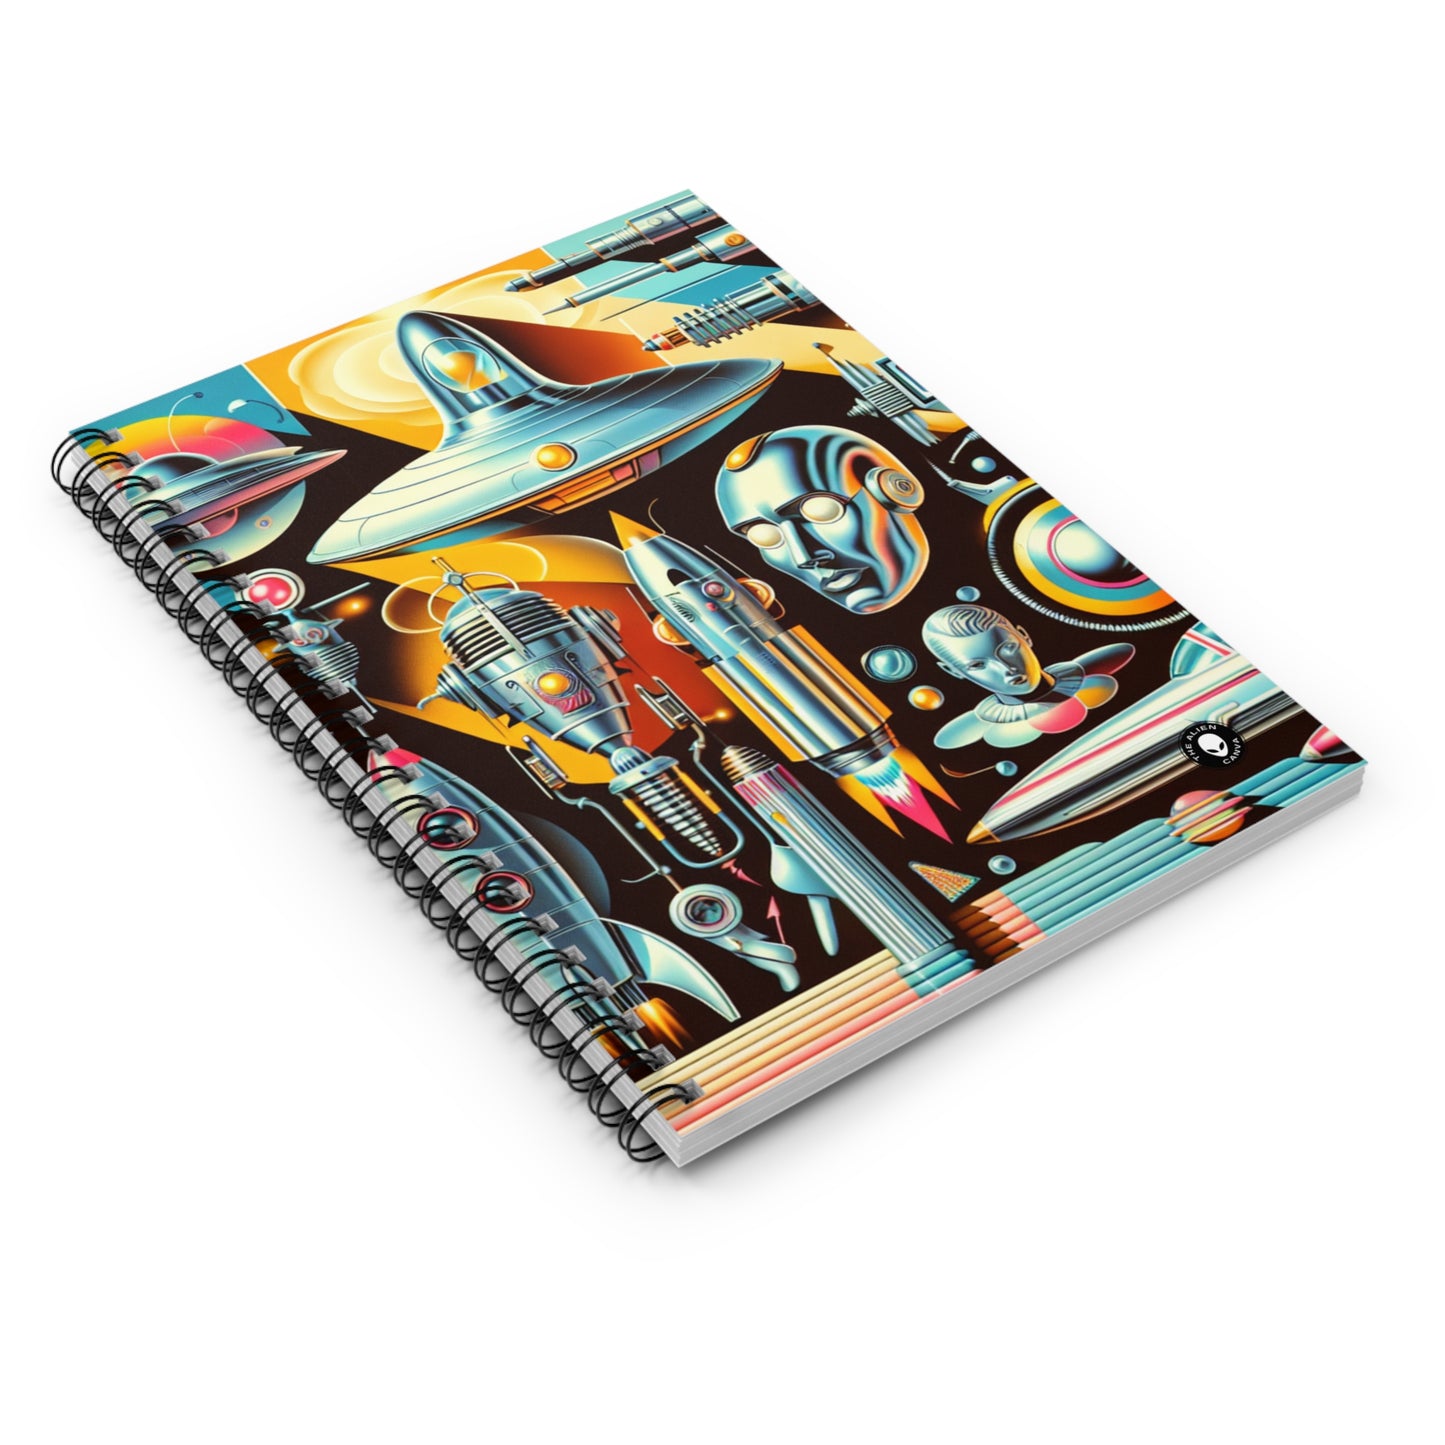 "Neon Deco: A Retro-Futuristic Utopia" - The Alien Spiral Notebook (Ruled Line) Retro-futurism